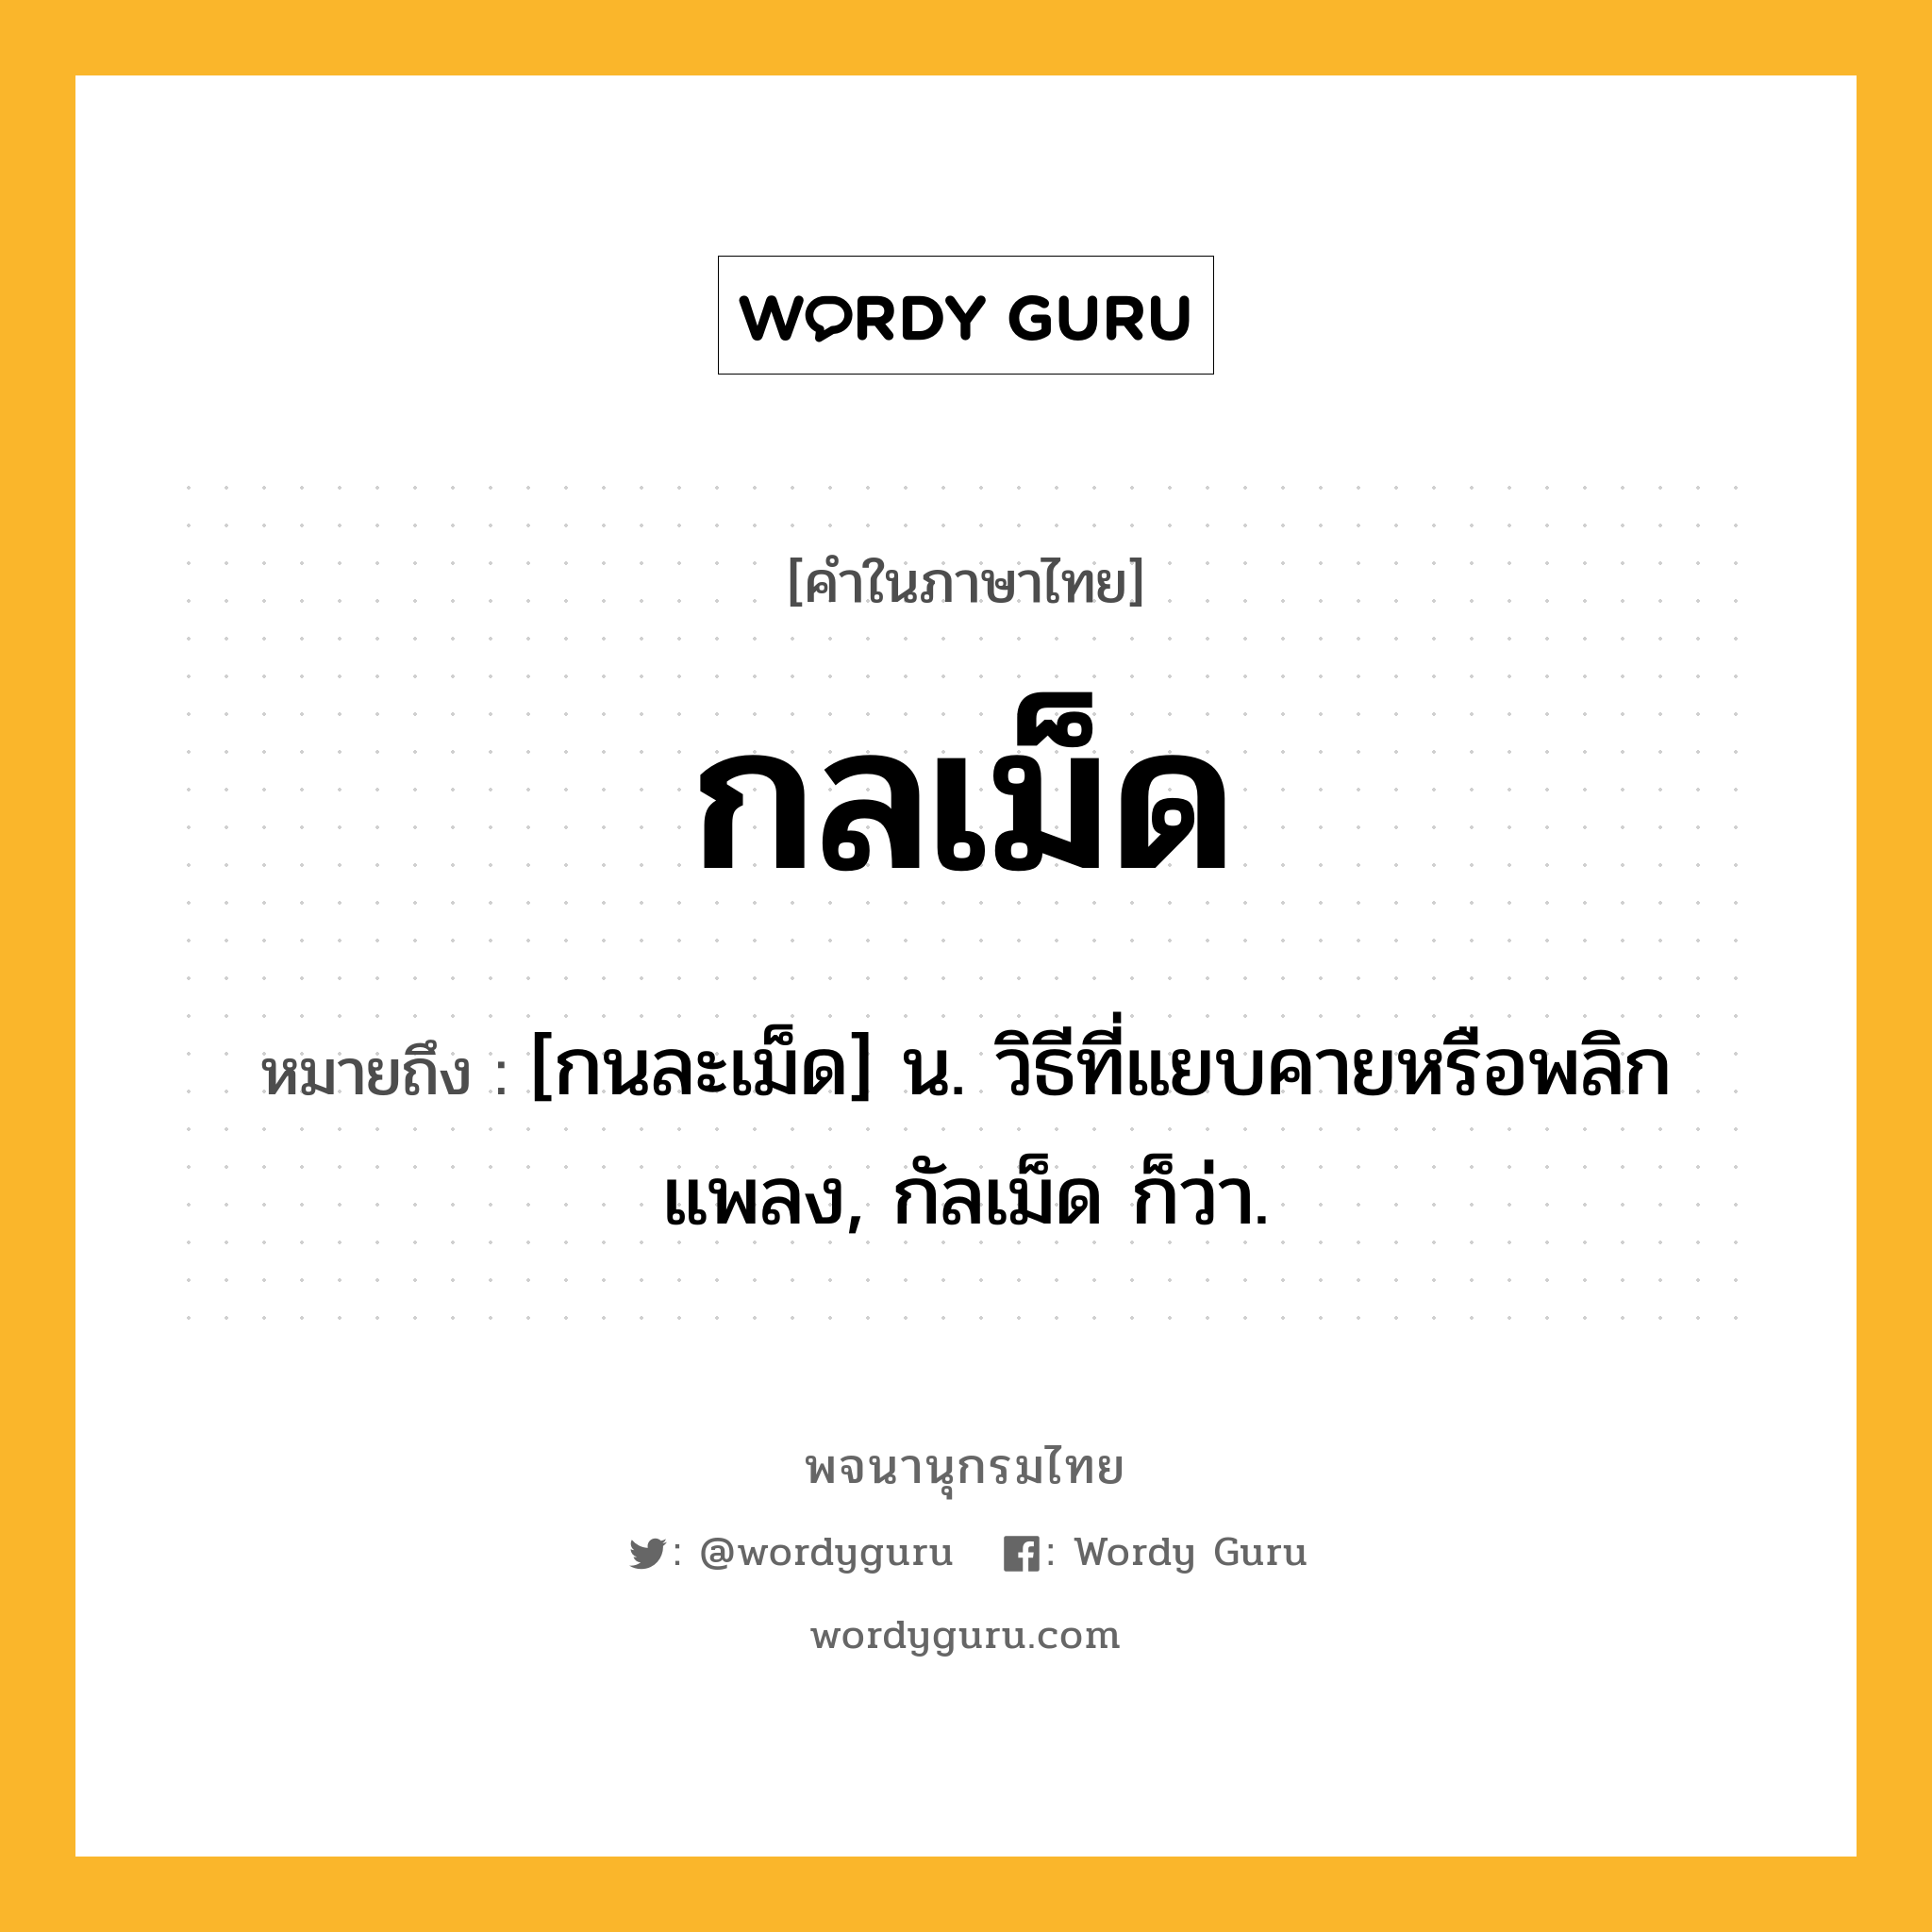 กลเม็ด ความหมาย หมายถึงอะไร?, คำในภาษาไทย กลเม็ด หมายถึง [กนละเม็ด] น. วิธีที่แยบคายหรือพลิกแพลง, กัลเม็ด ก็ว่า.